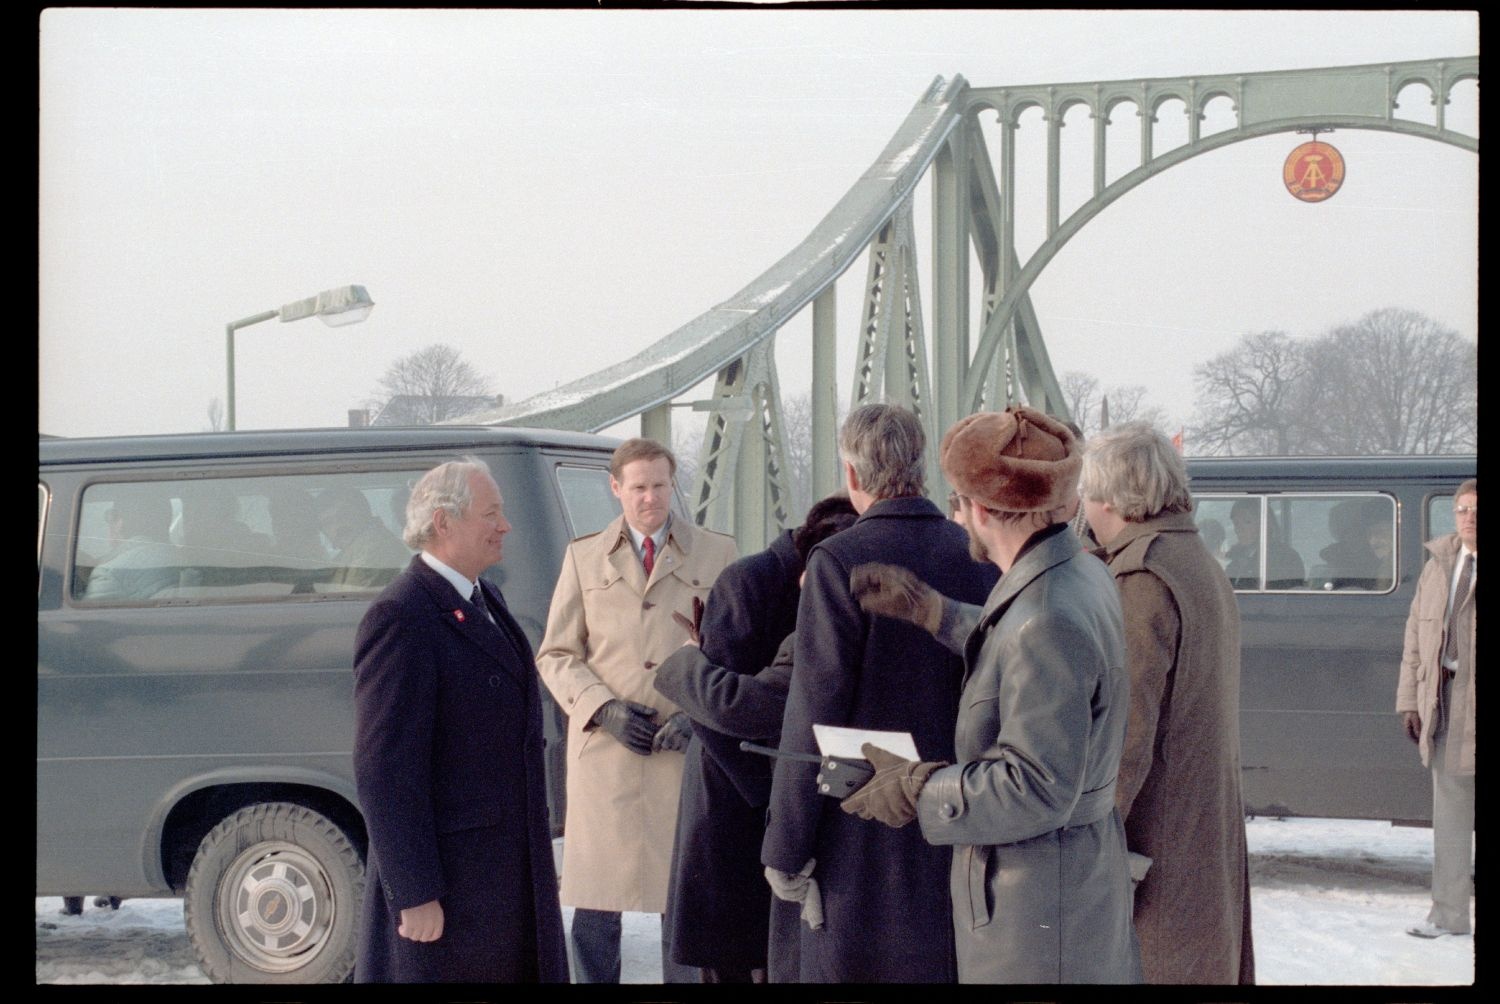 Fotografie: Agentenaustausch auf der Glienicker Brücke (AlliiertenMuseum/U.S. Army Photograph Public Domain Mark)